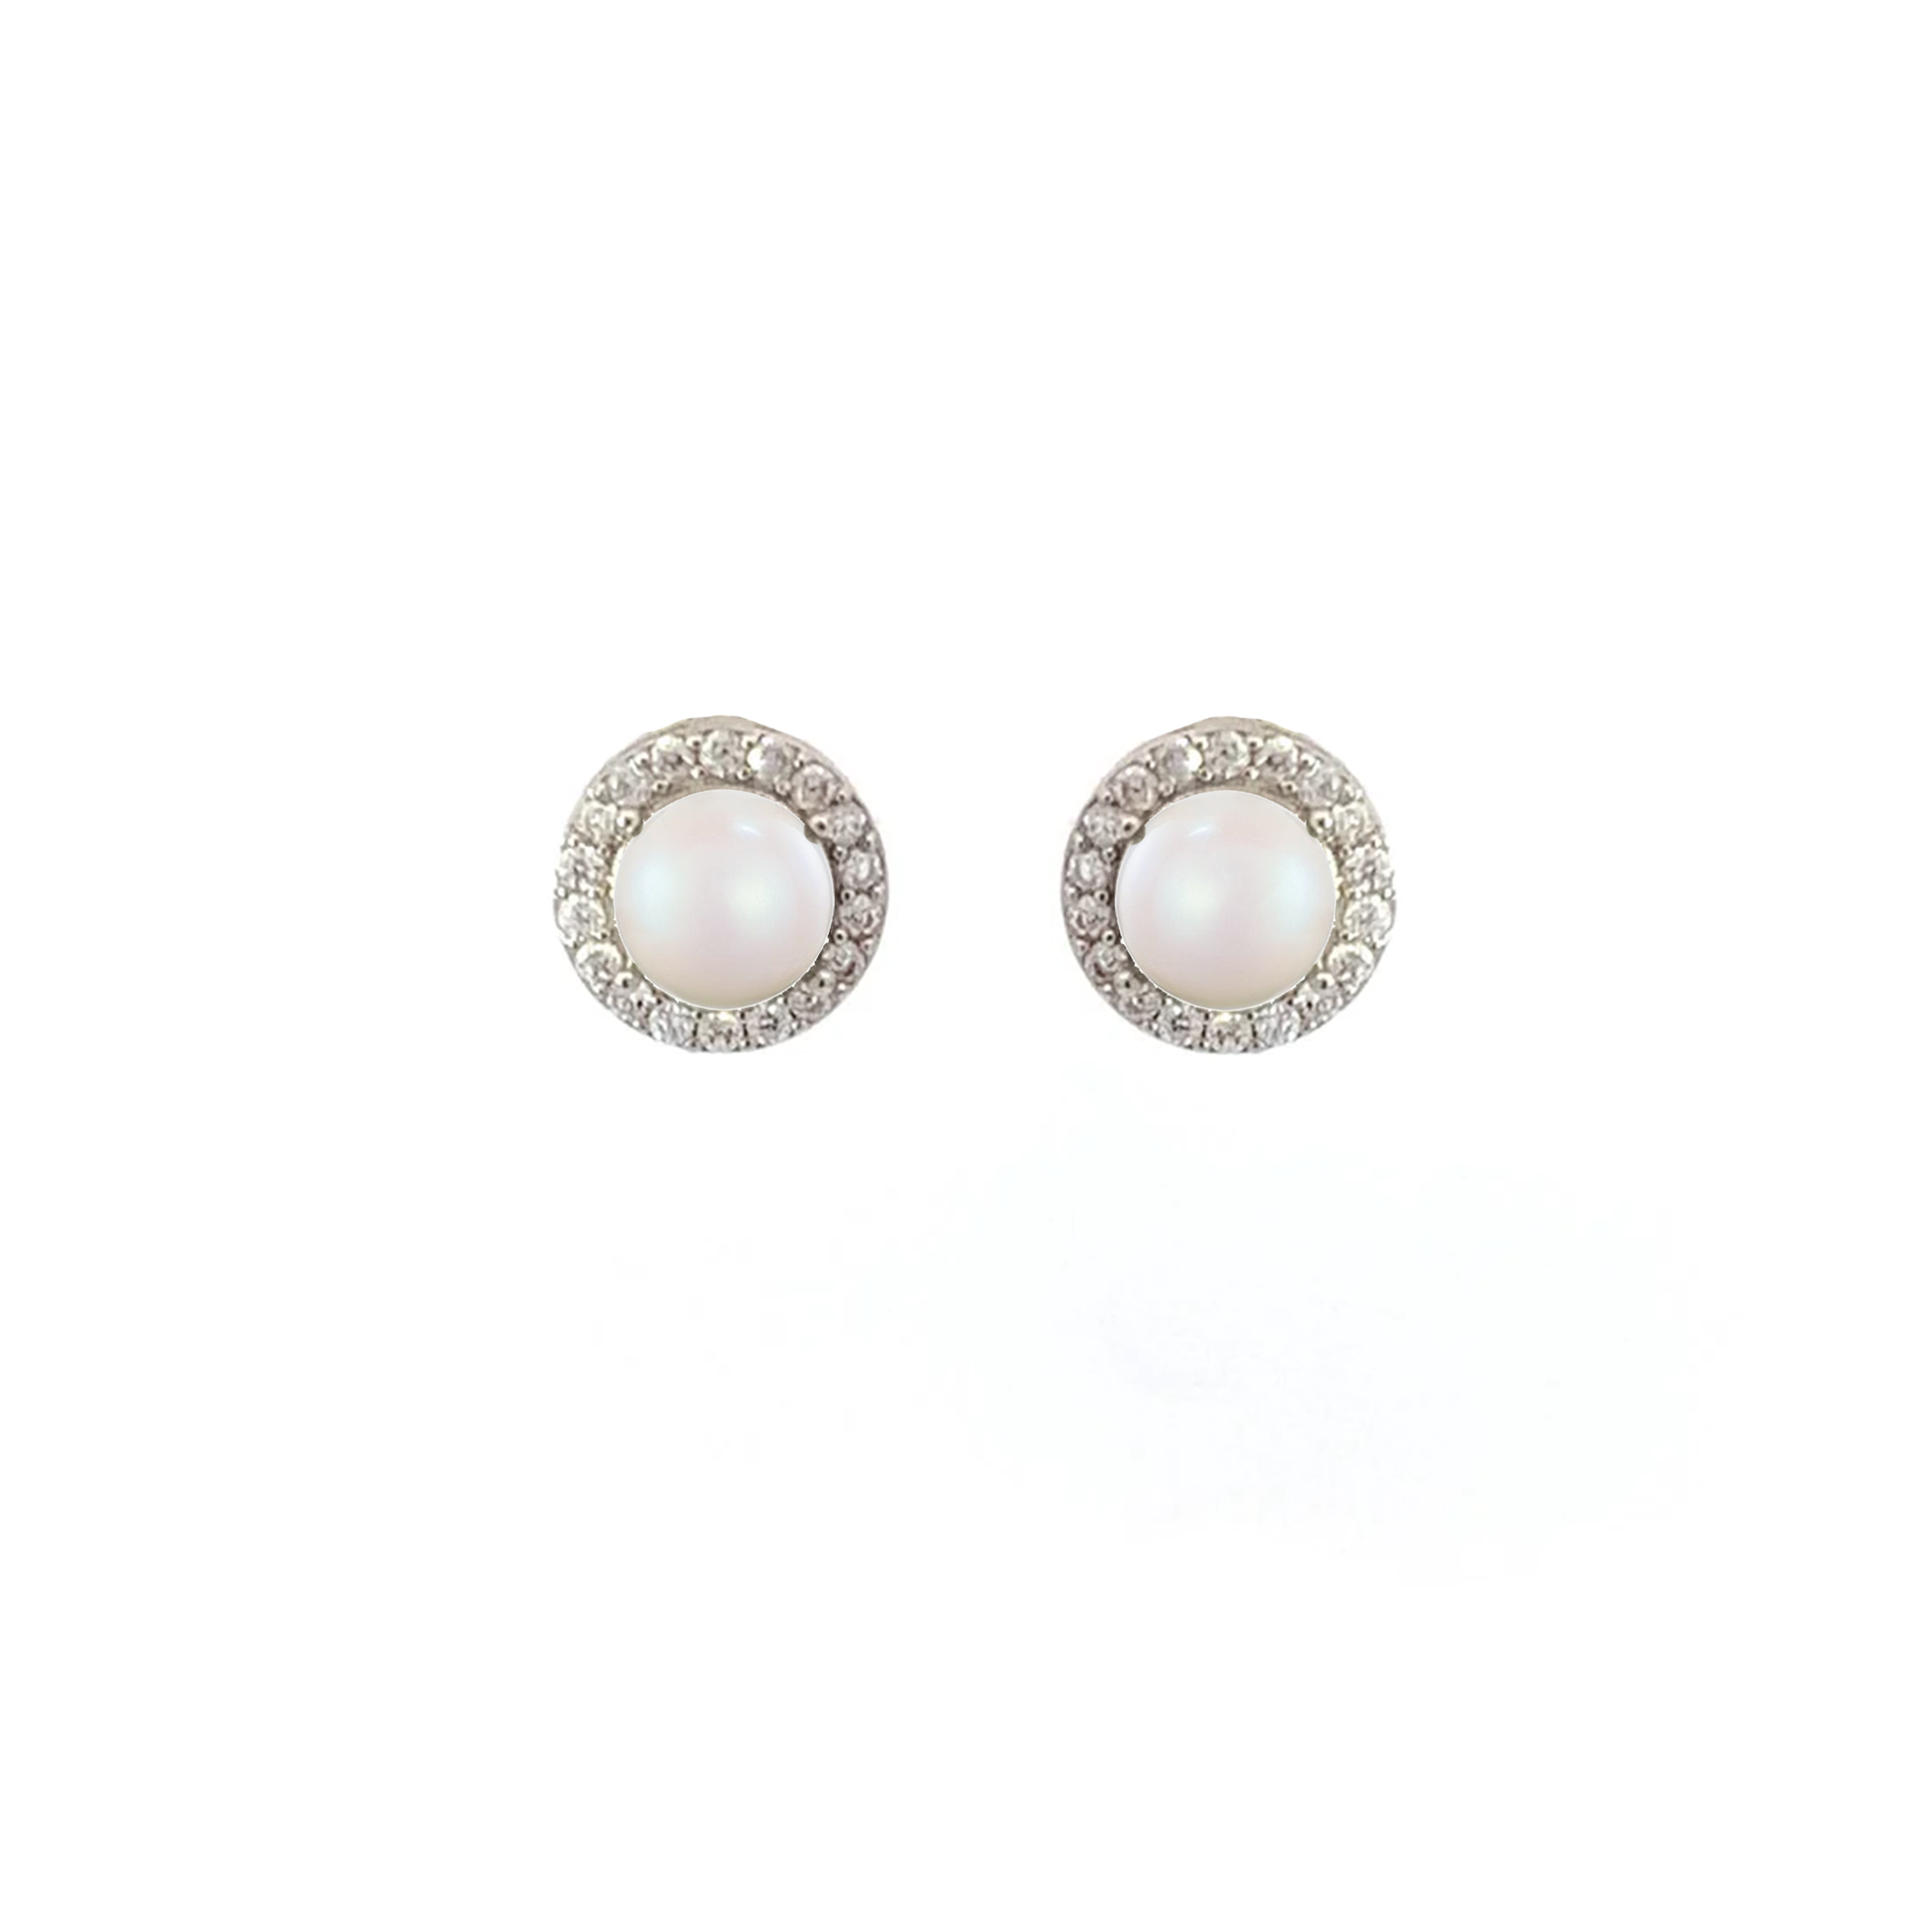 Pearl halo stud earrings silver